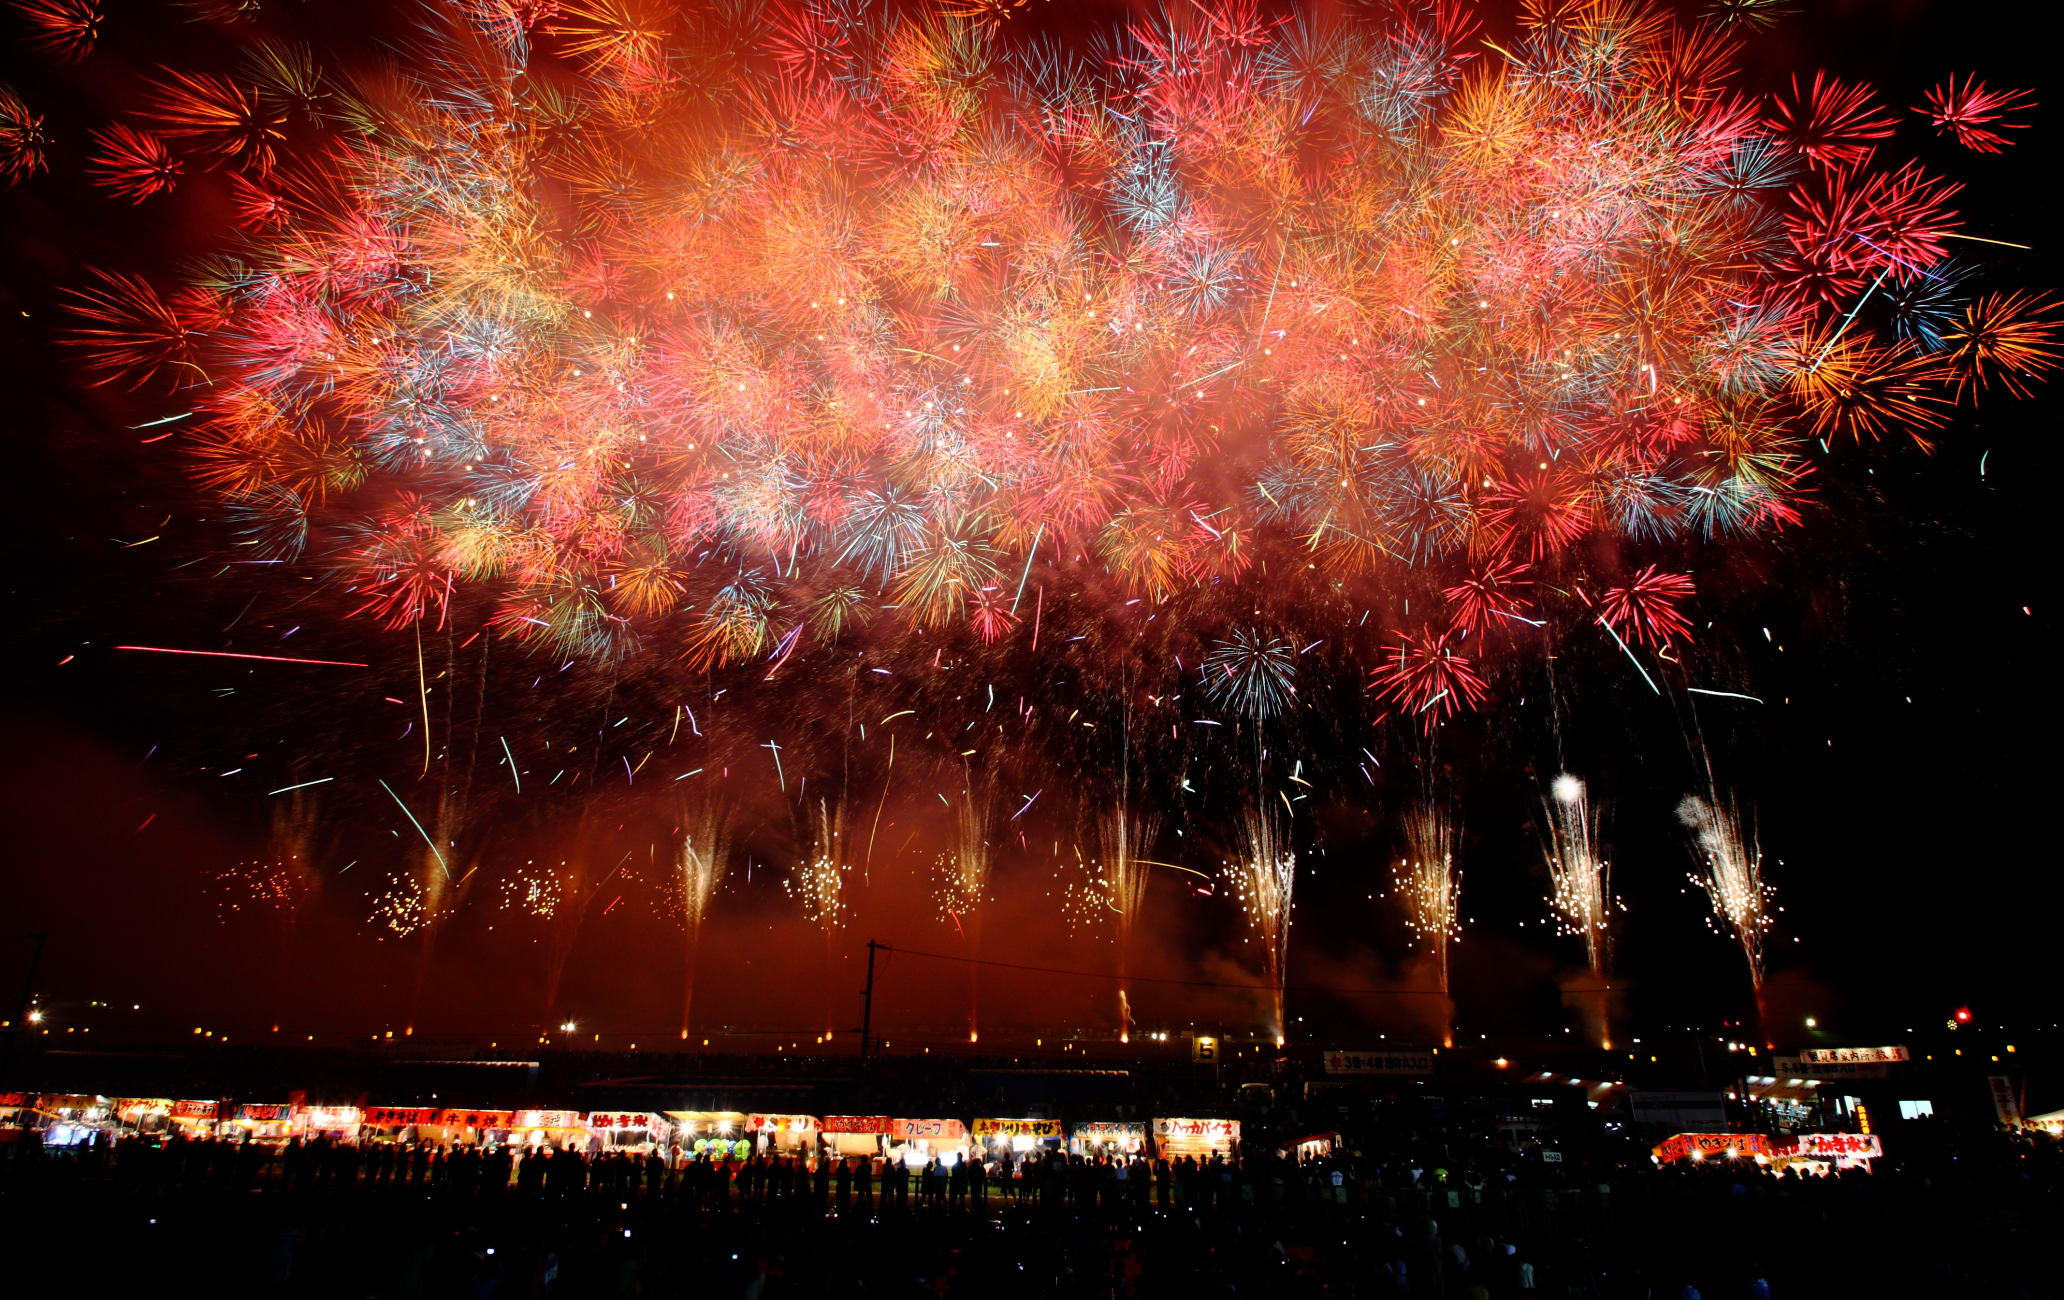 Omagari Fireworks Festival